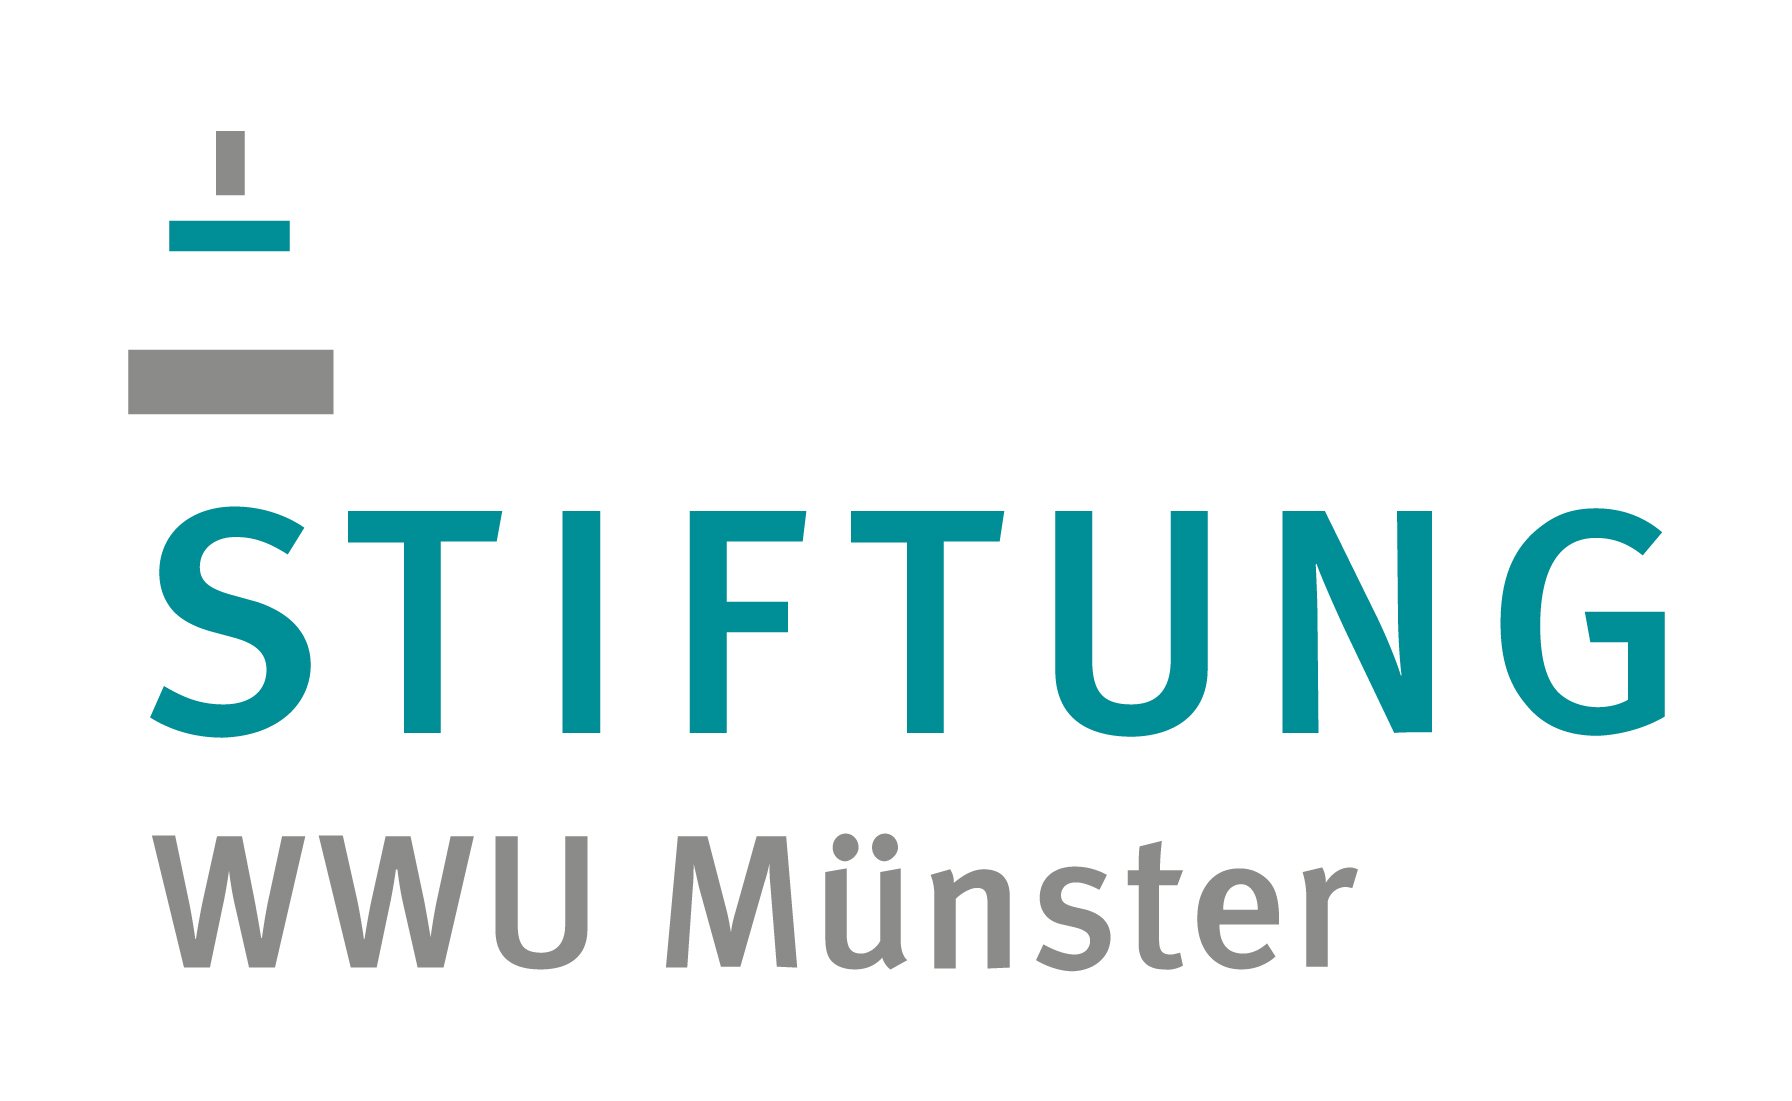 Die "Stiftung WWU Münster" feiert ihr zehnjähriges Bestehen./Stiftung WWU Münster